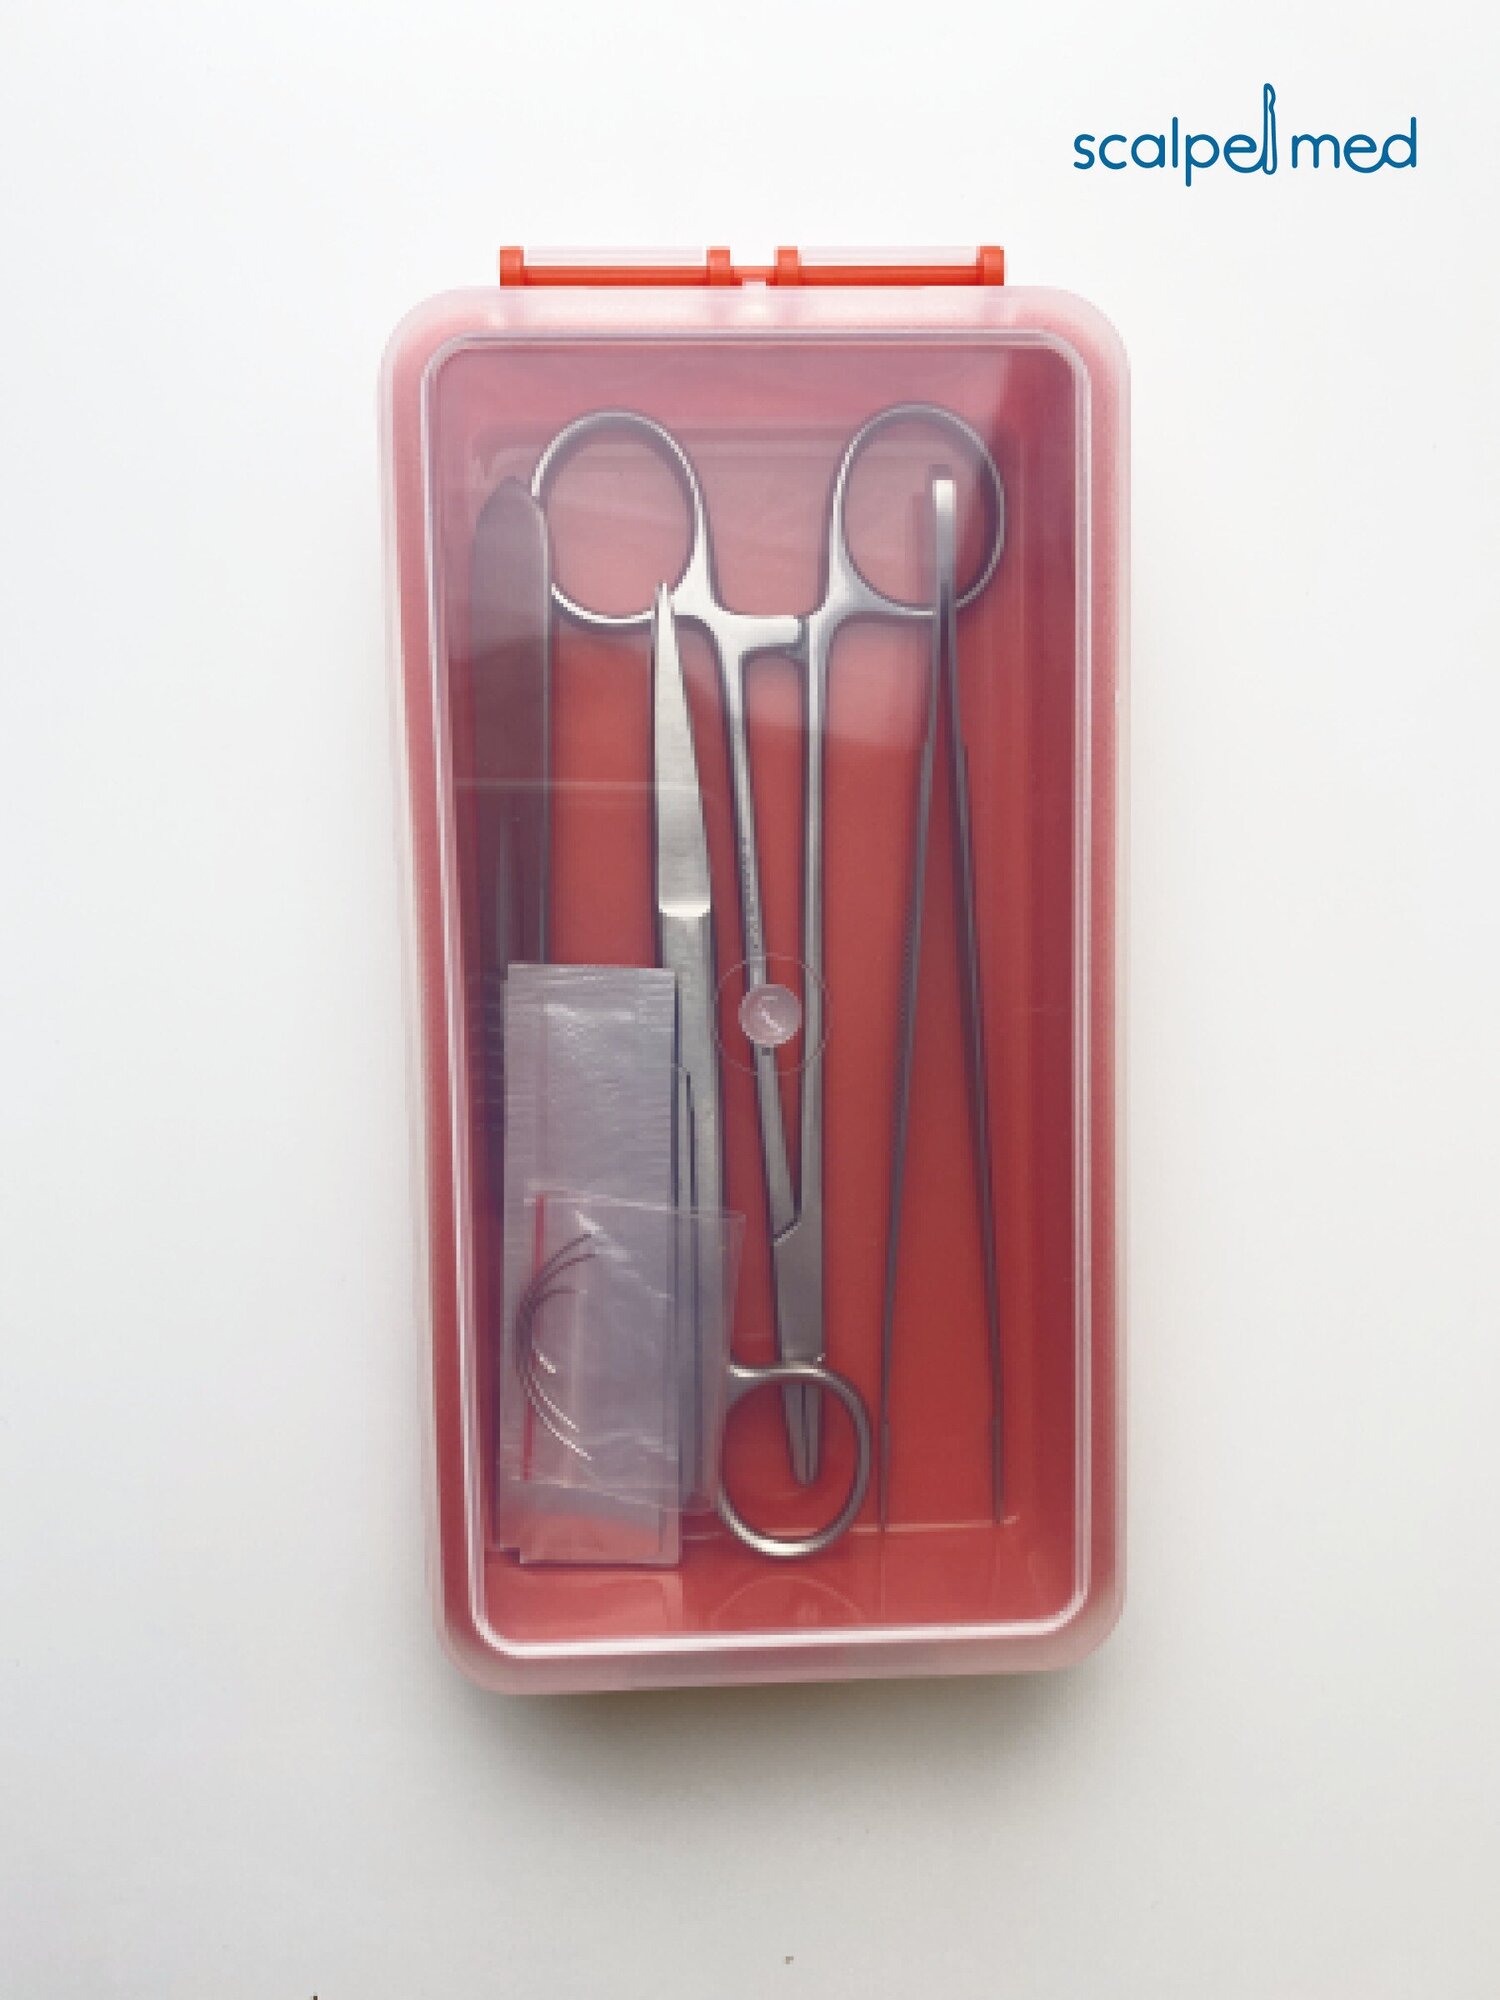 Scalpel Med Хирургический набор инструментов для шитья / Хирургические иглы , Иглодержатель / Медицинские инструменты в кейсе